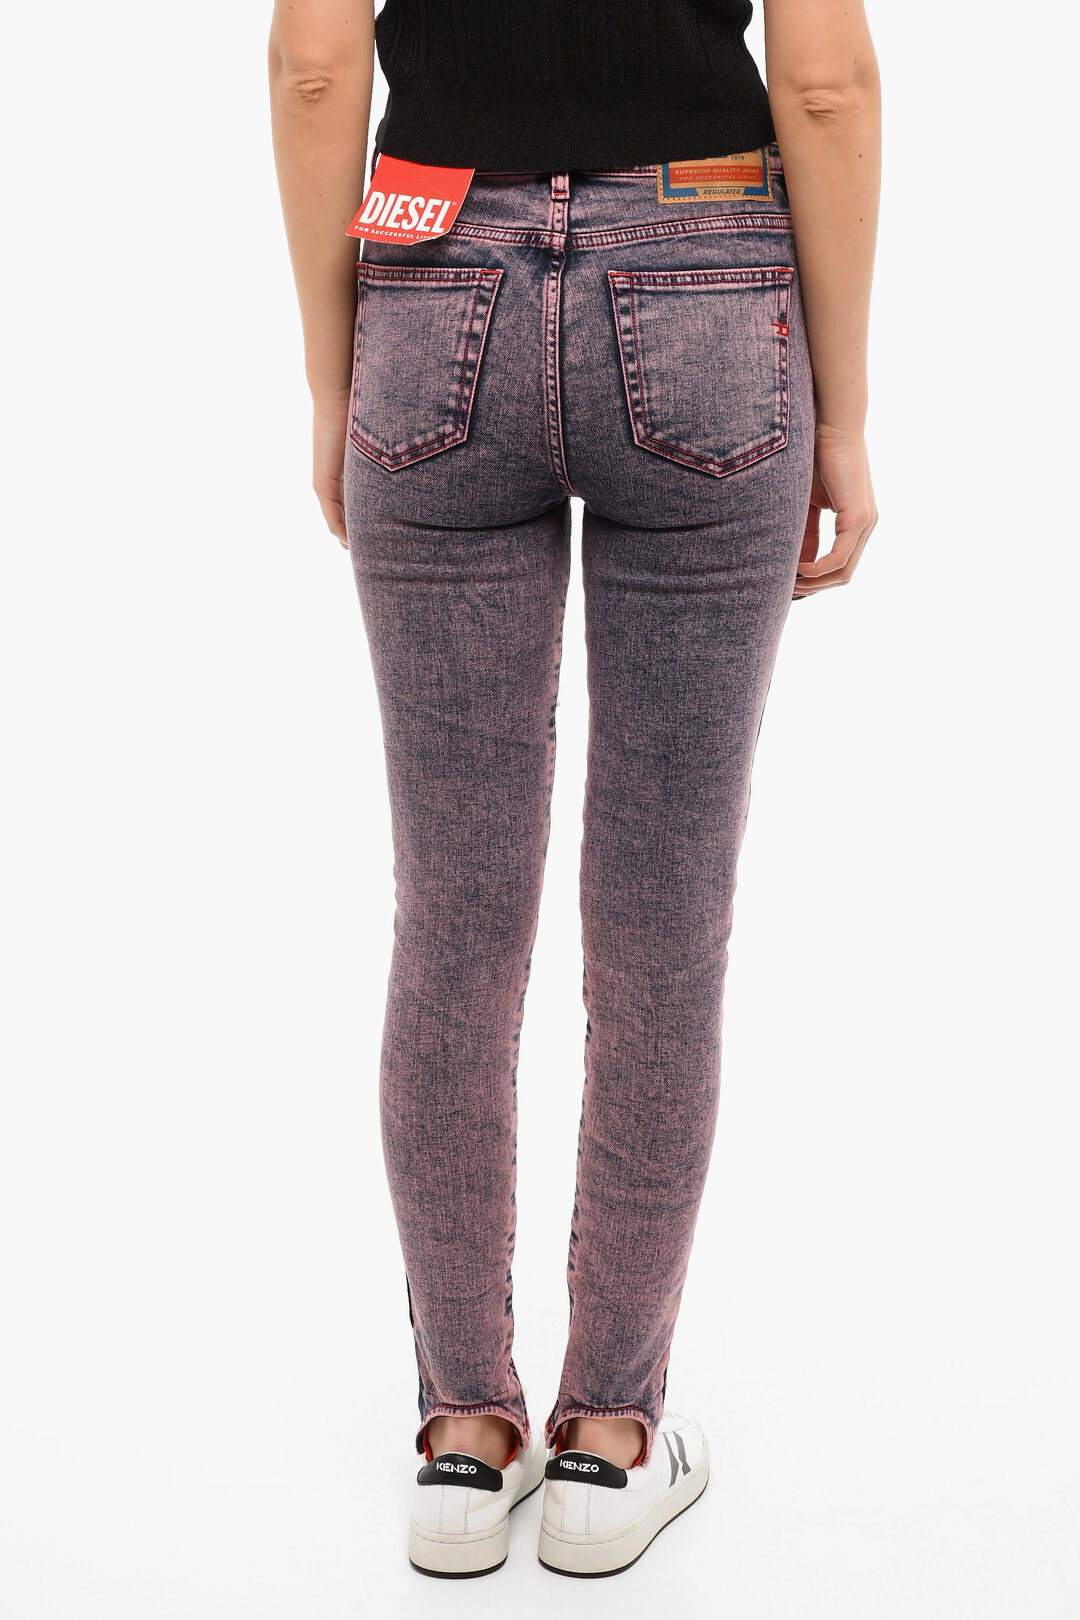 Long Stilt Pants 2023 Women's Jeans Embroidered Slim Straight